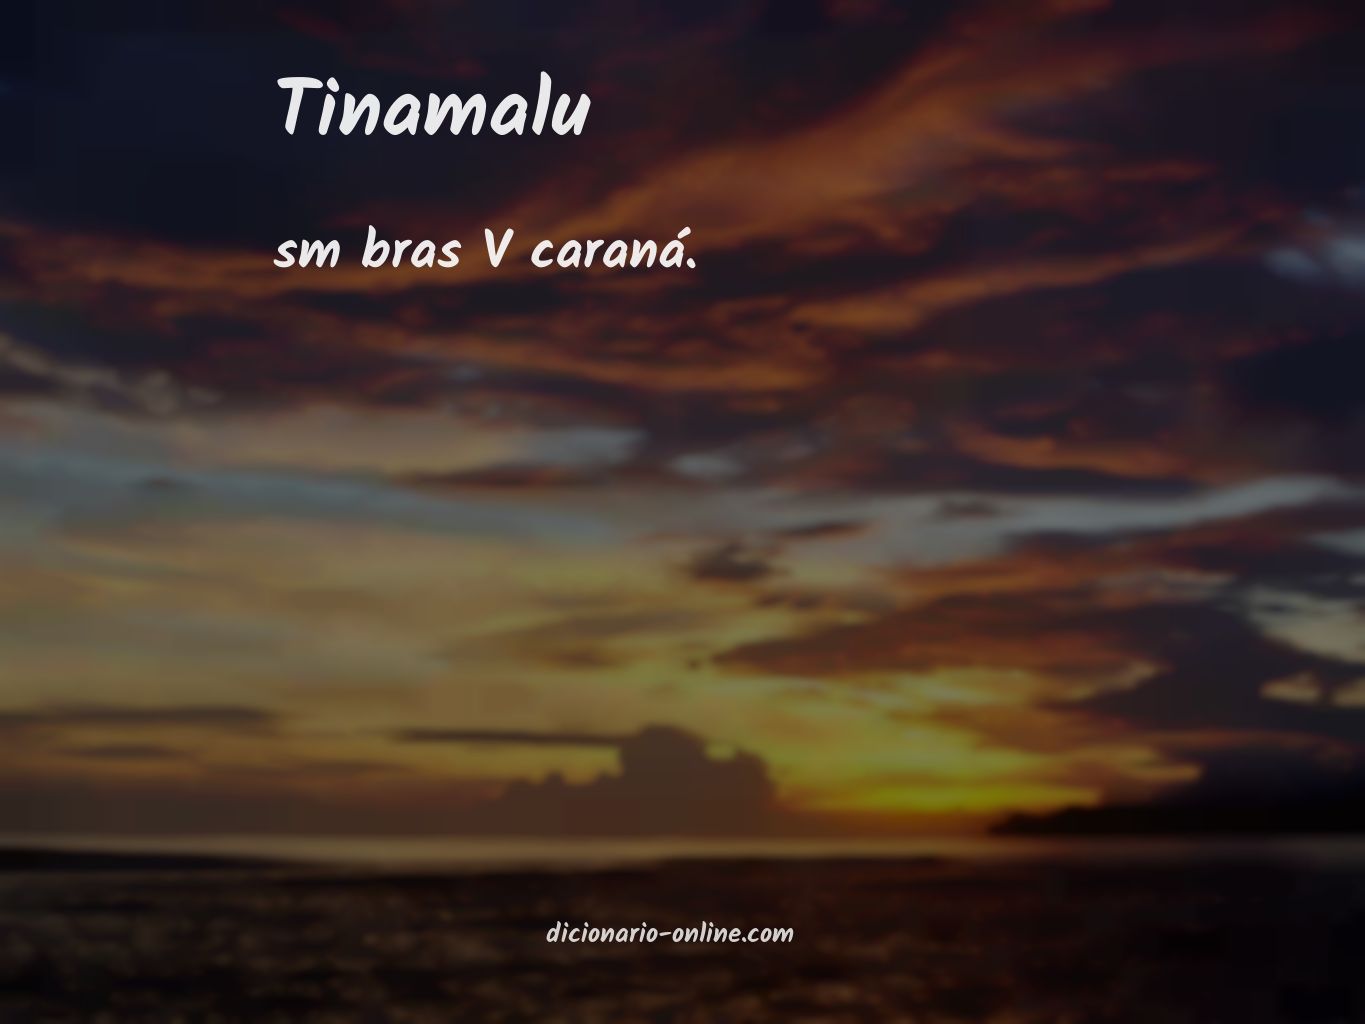 Significado de tinamalu